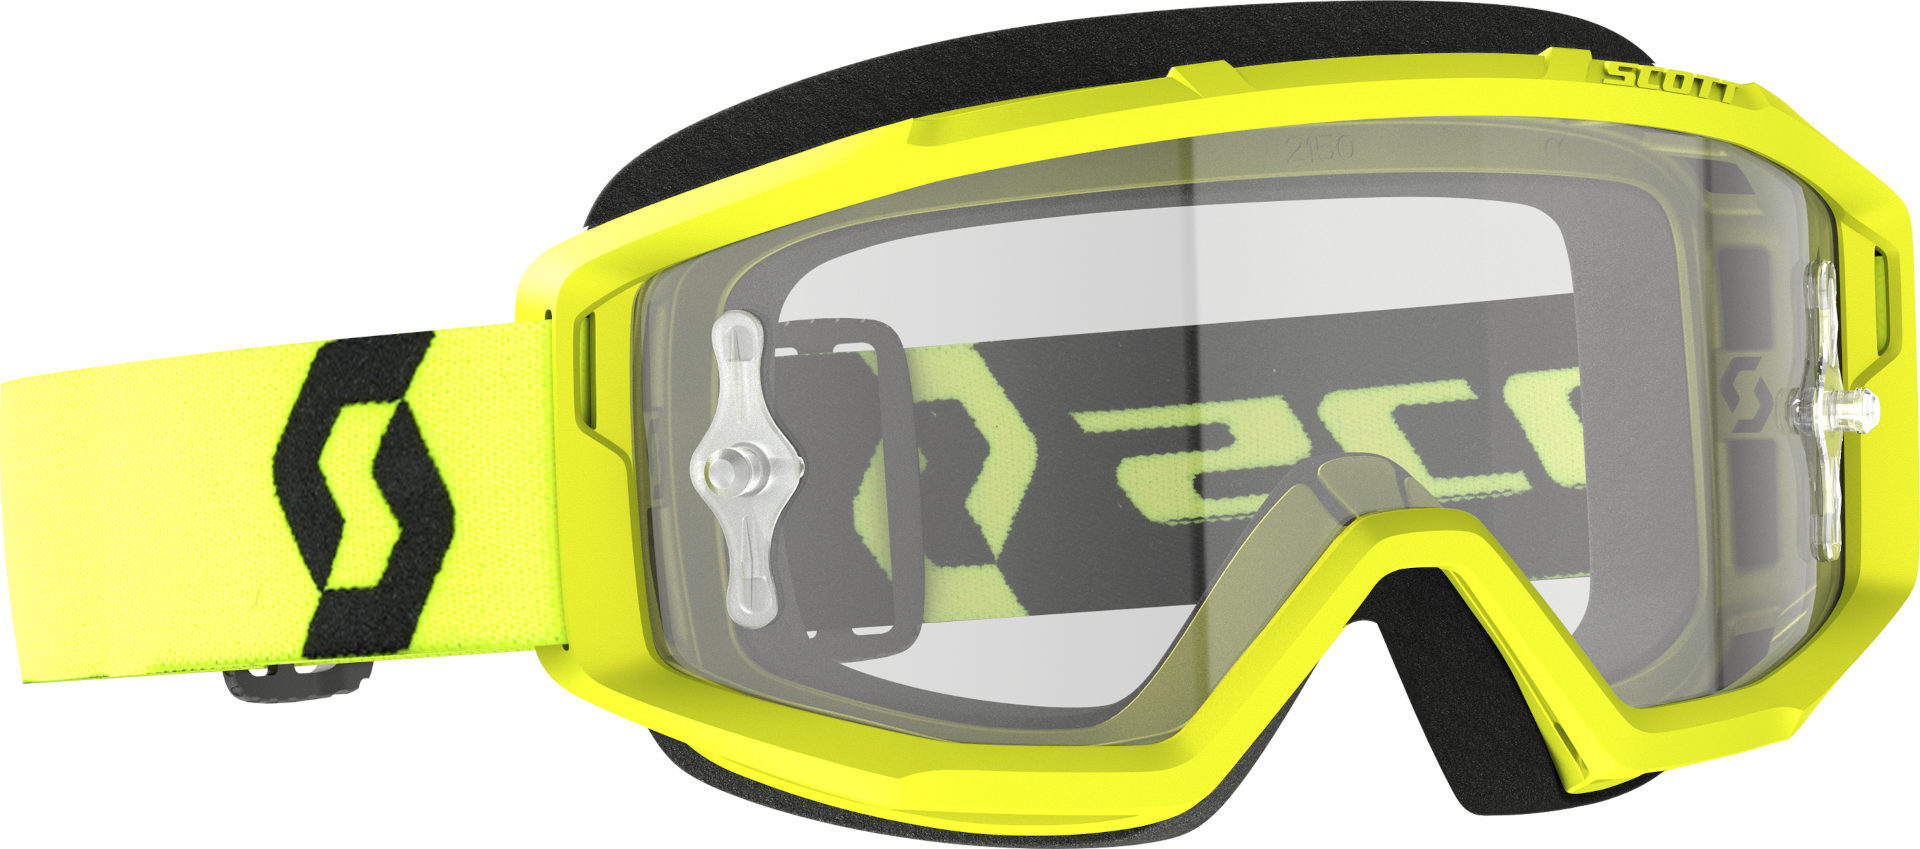 Мотоциклетные очки Scott Primal Clear с логотипом, желтый/черный